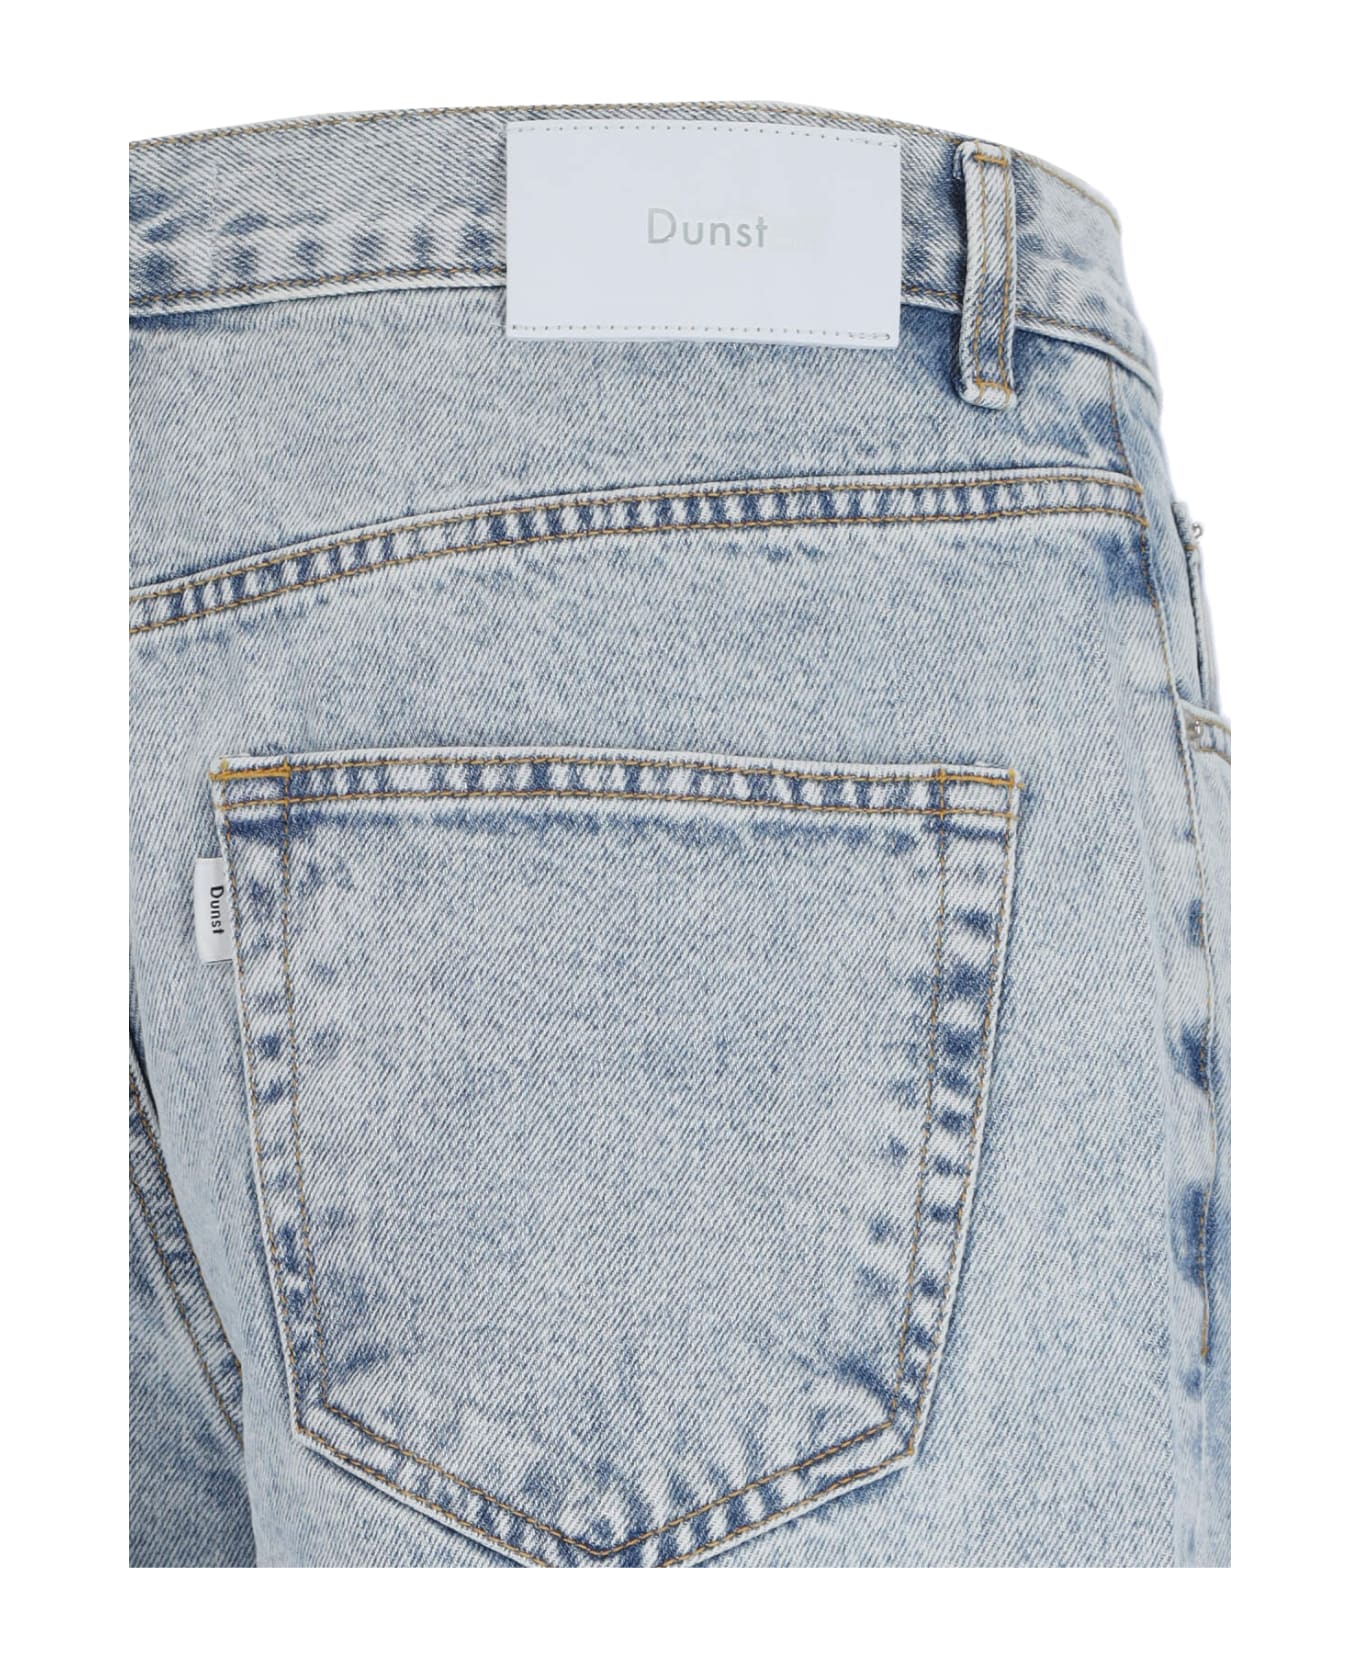 Dunst Wide Jeans - Light Blue